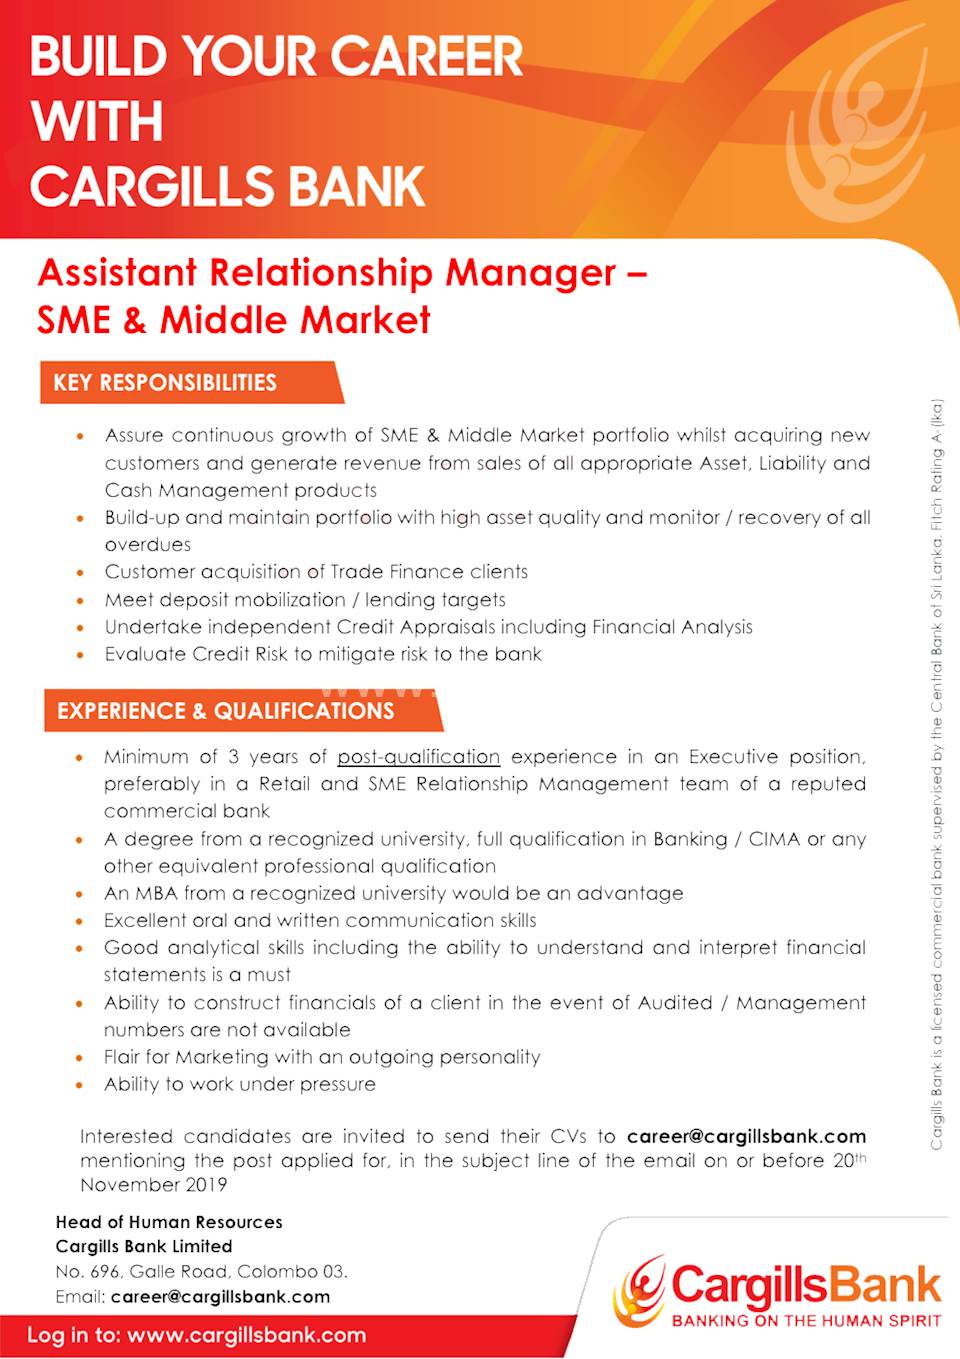 Assistant Relationship Manager - SME & Middle Market